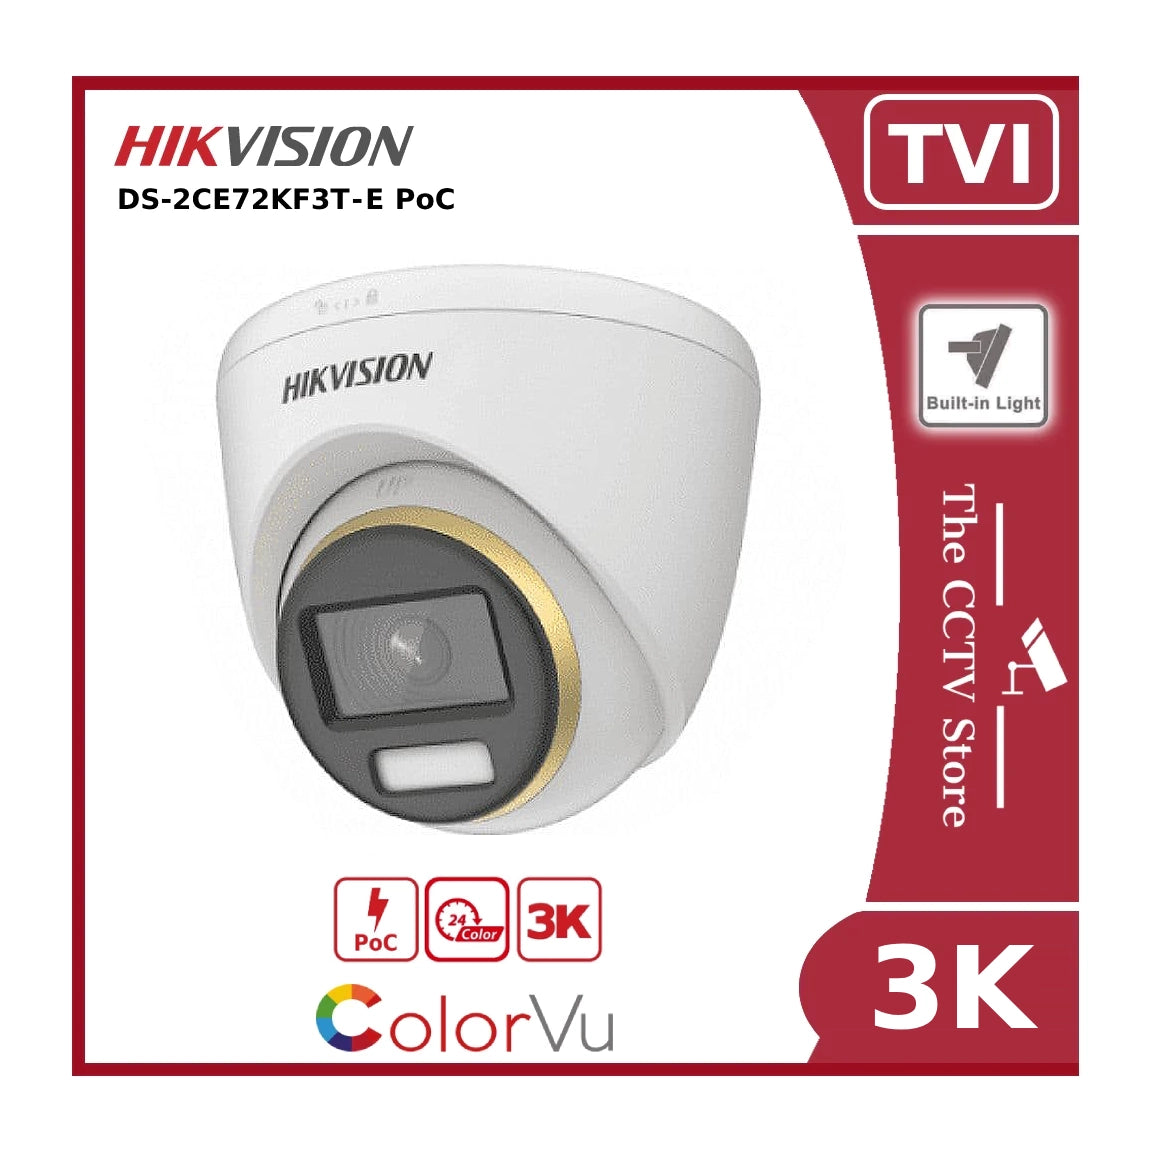 3K PoC Hikvision DS-2CE72KF3T-E PoC 3K ColorVu TVI Fixed Turret Camera - Offer